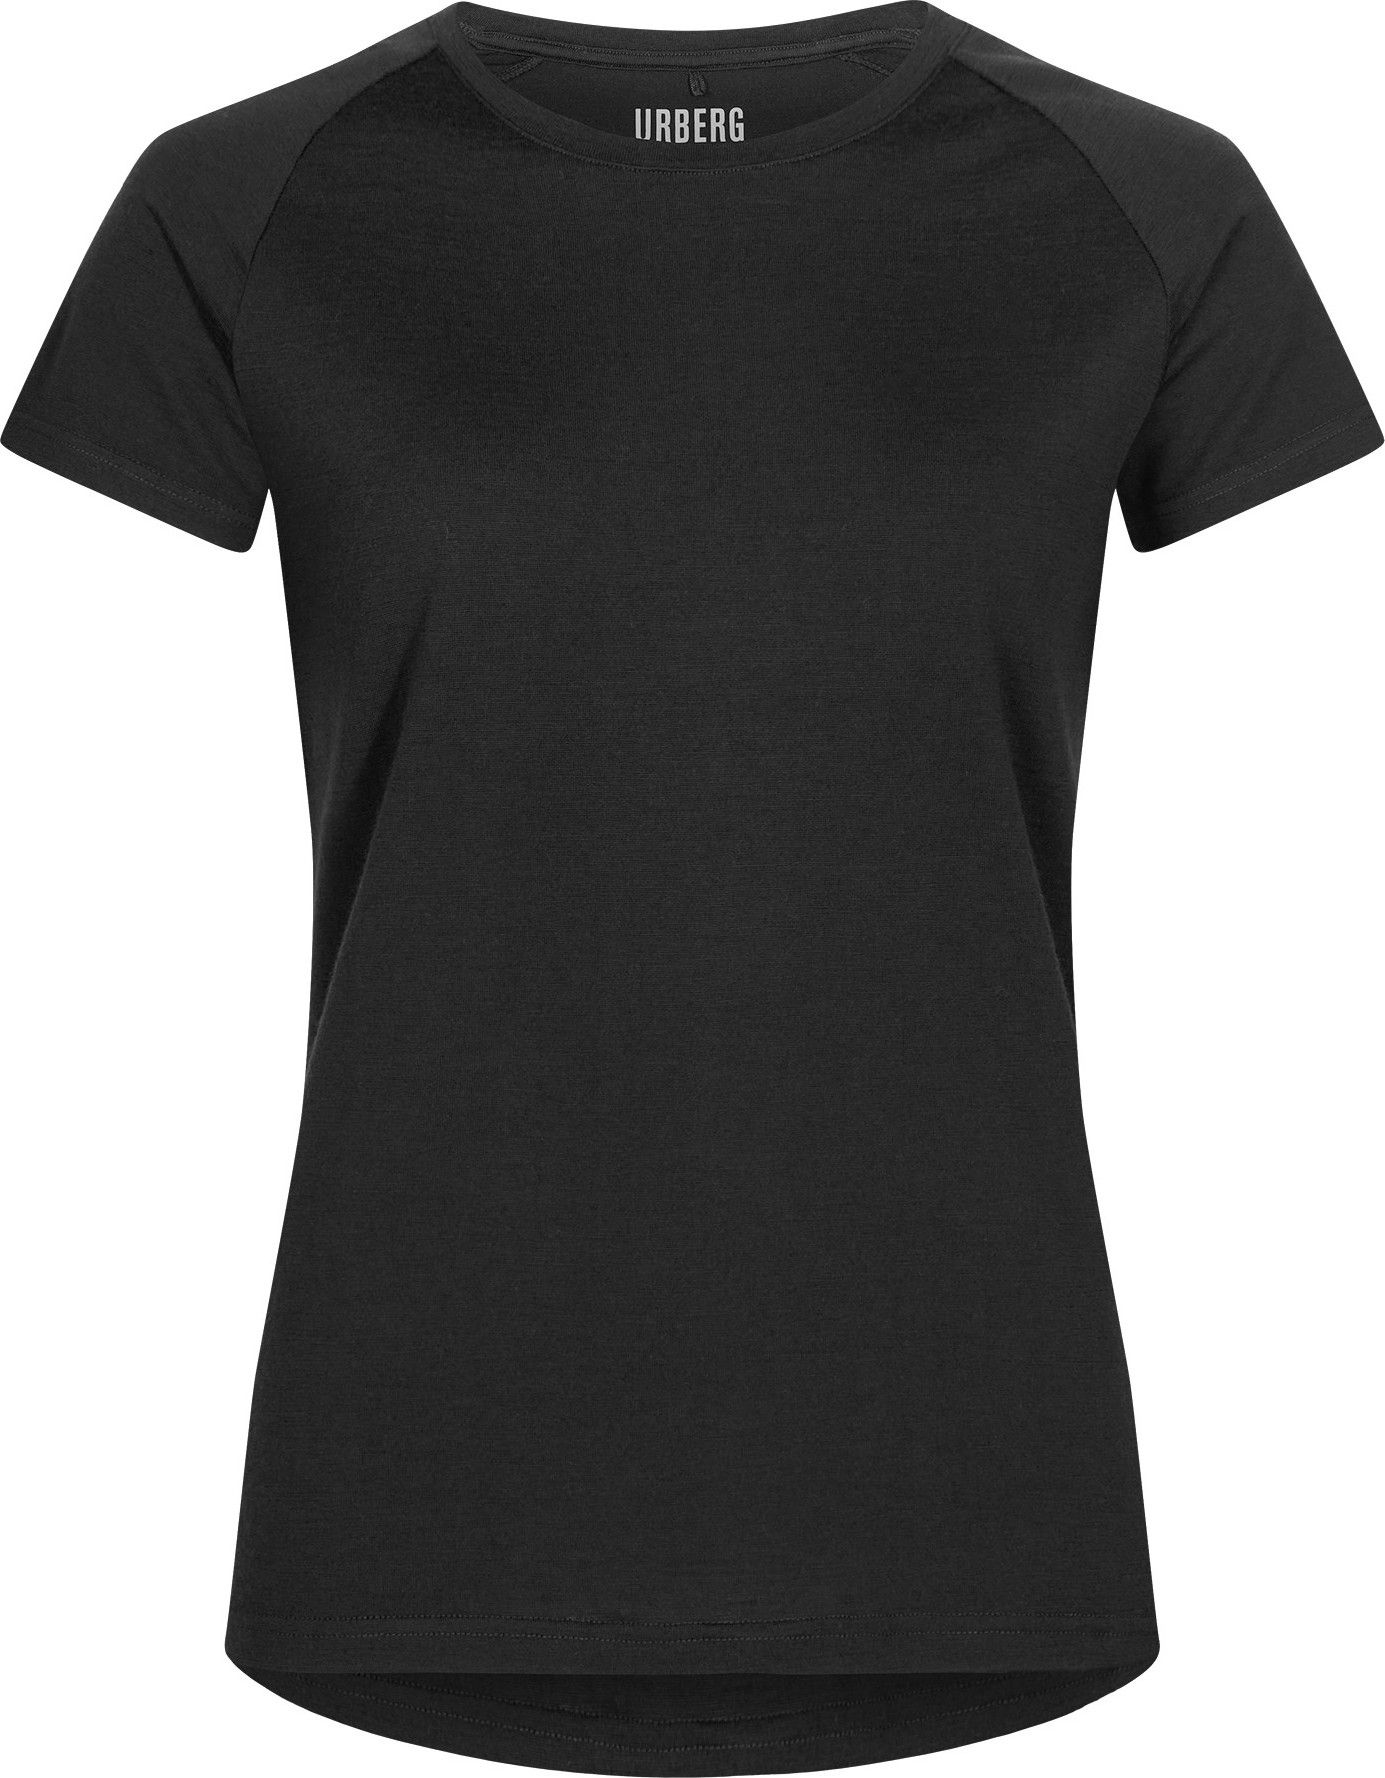 Urberg Women's Lyngen Merino T-Shirt 2.0 Black beauty